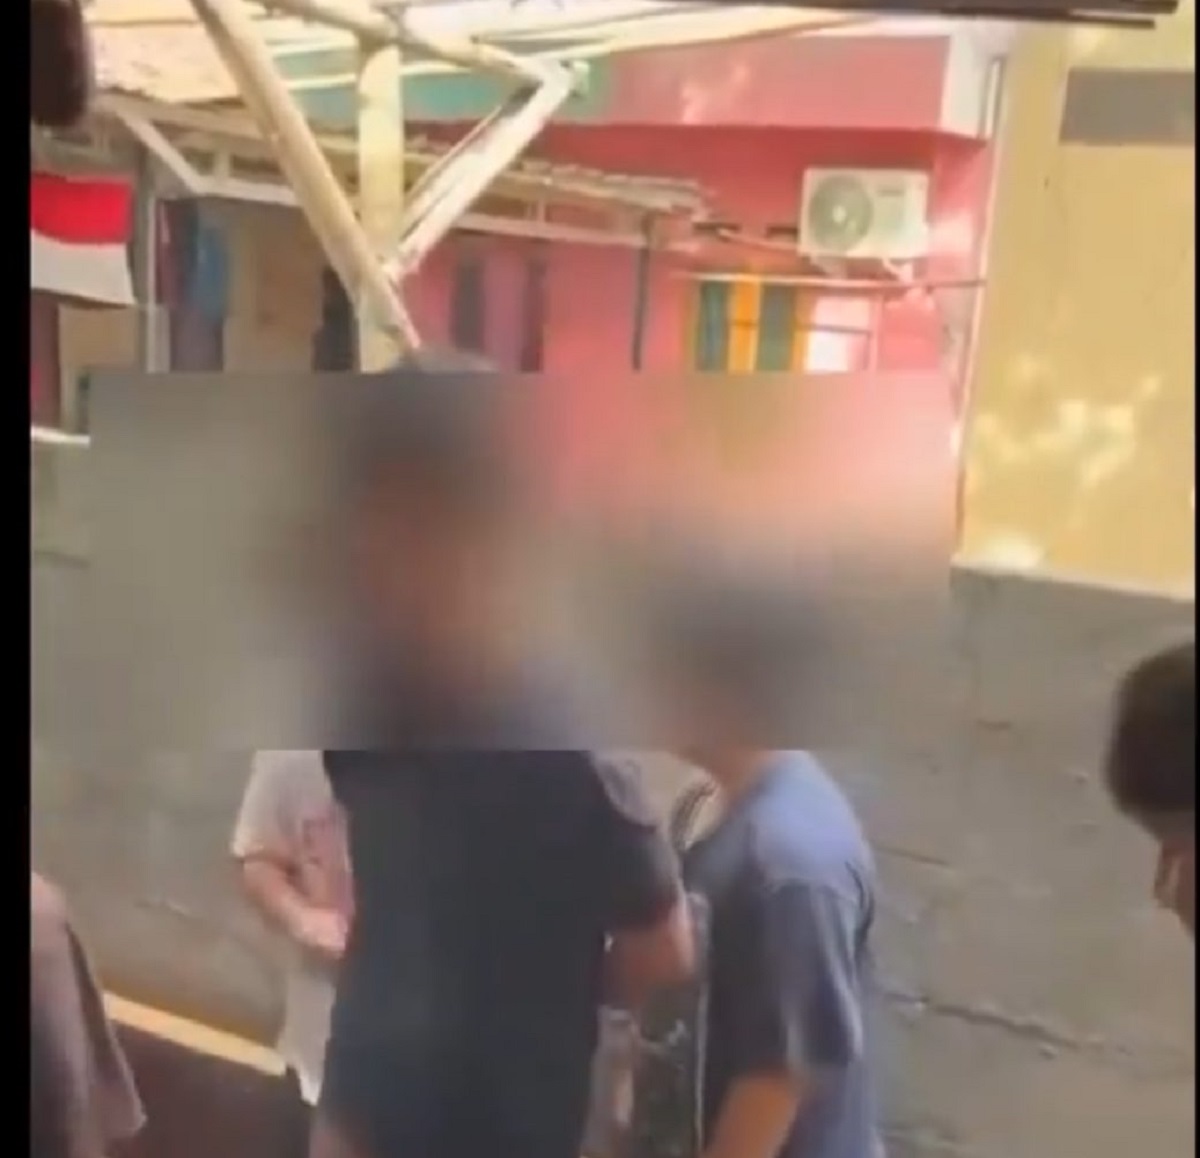 Viral! Video Kasus Bullying di Binus yang Diduga Ada Anak Vincent, Korban Dianiaya Hingga Dilecehkan